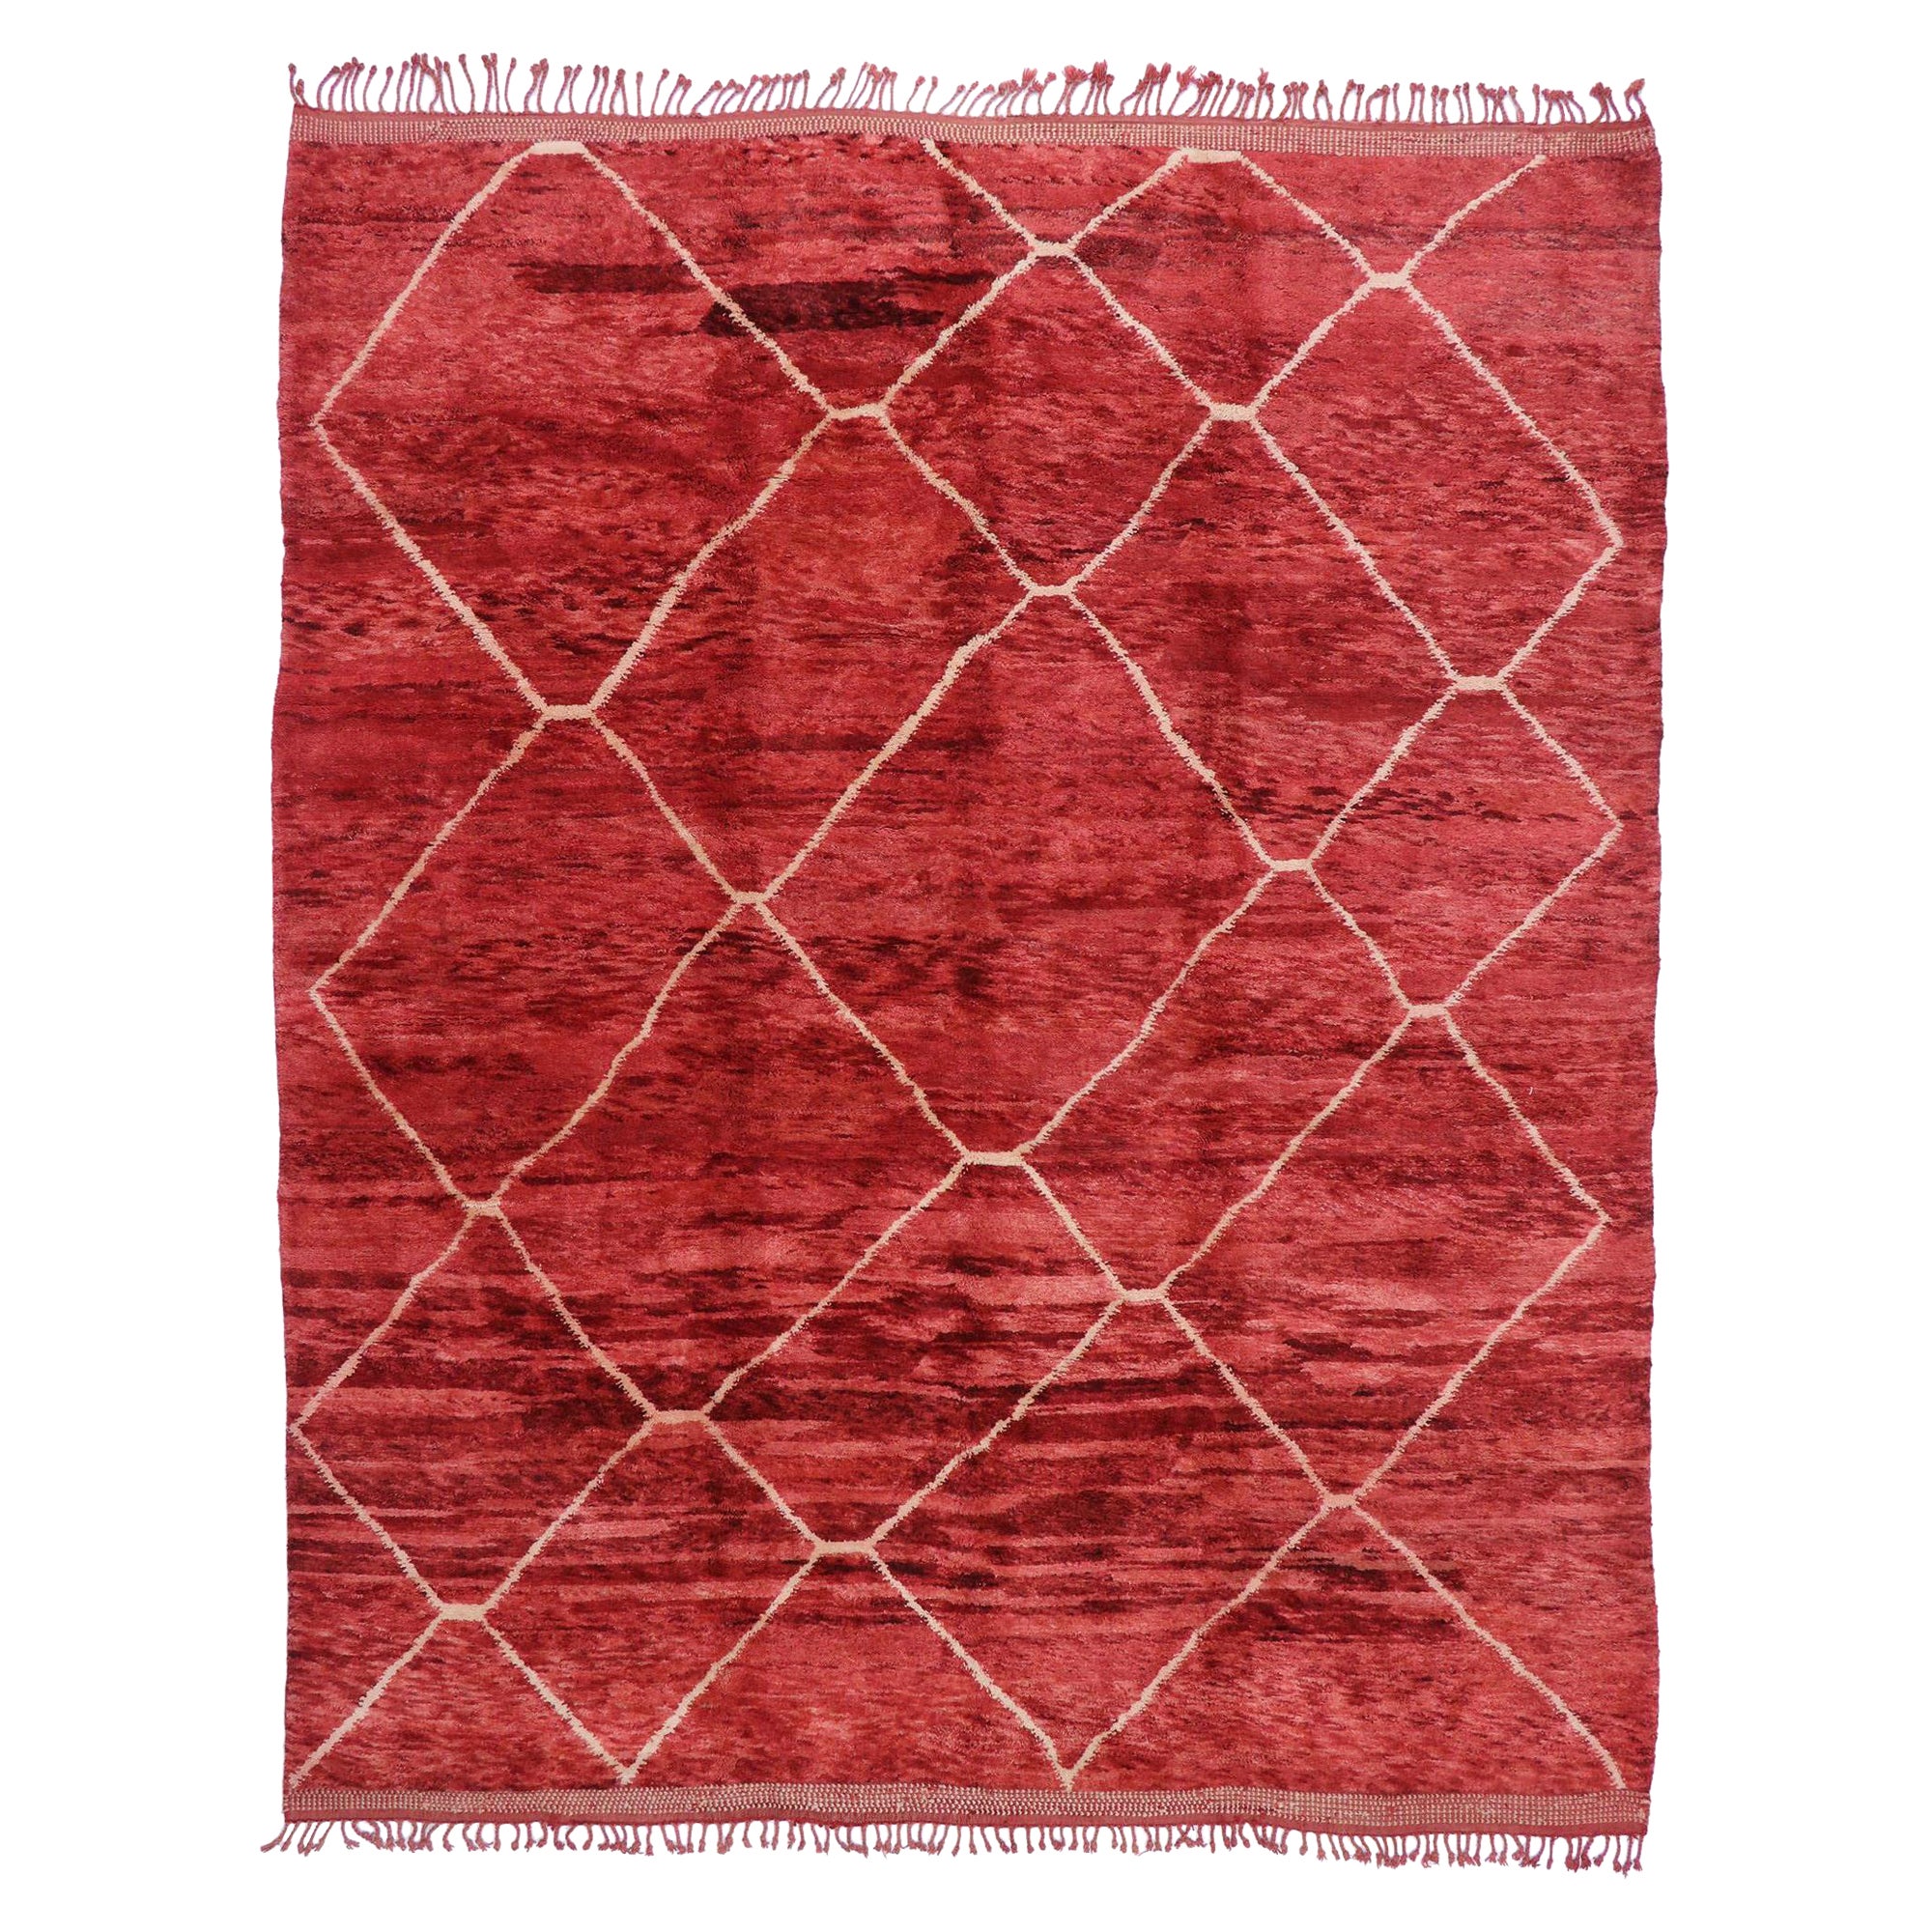 Nouveau tapis berbère marocain contemporain avec style postmoderne bohème